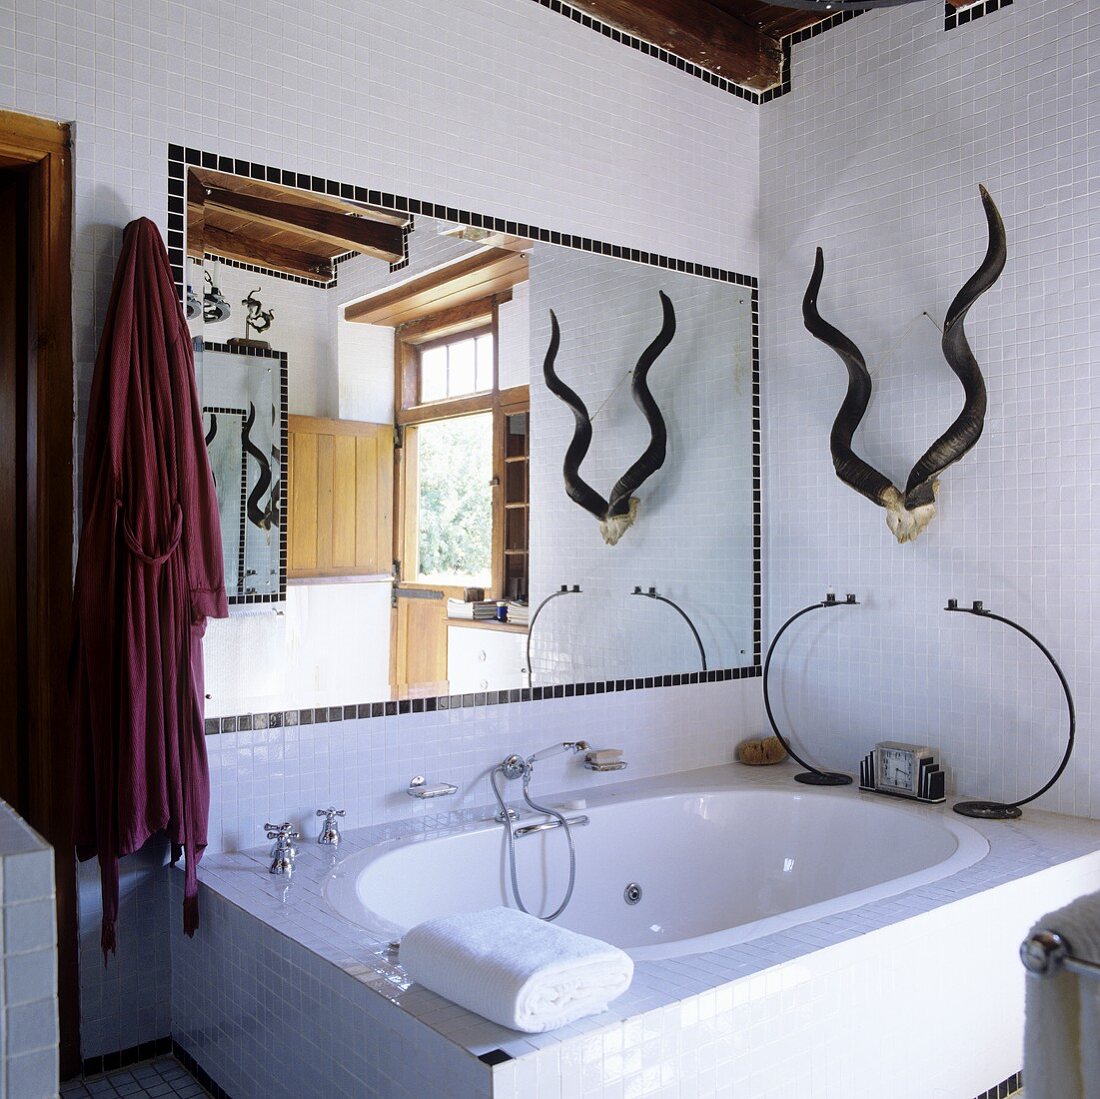 Bad im südafrikanischen Landhaus mit Badewanne und Spiegel vor weisser Mosaikfliesenwand